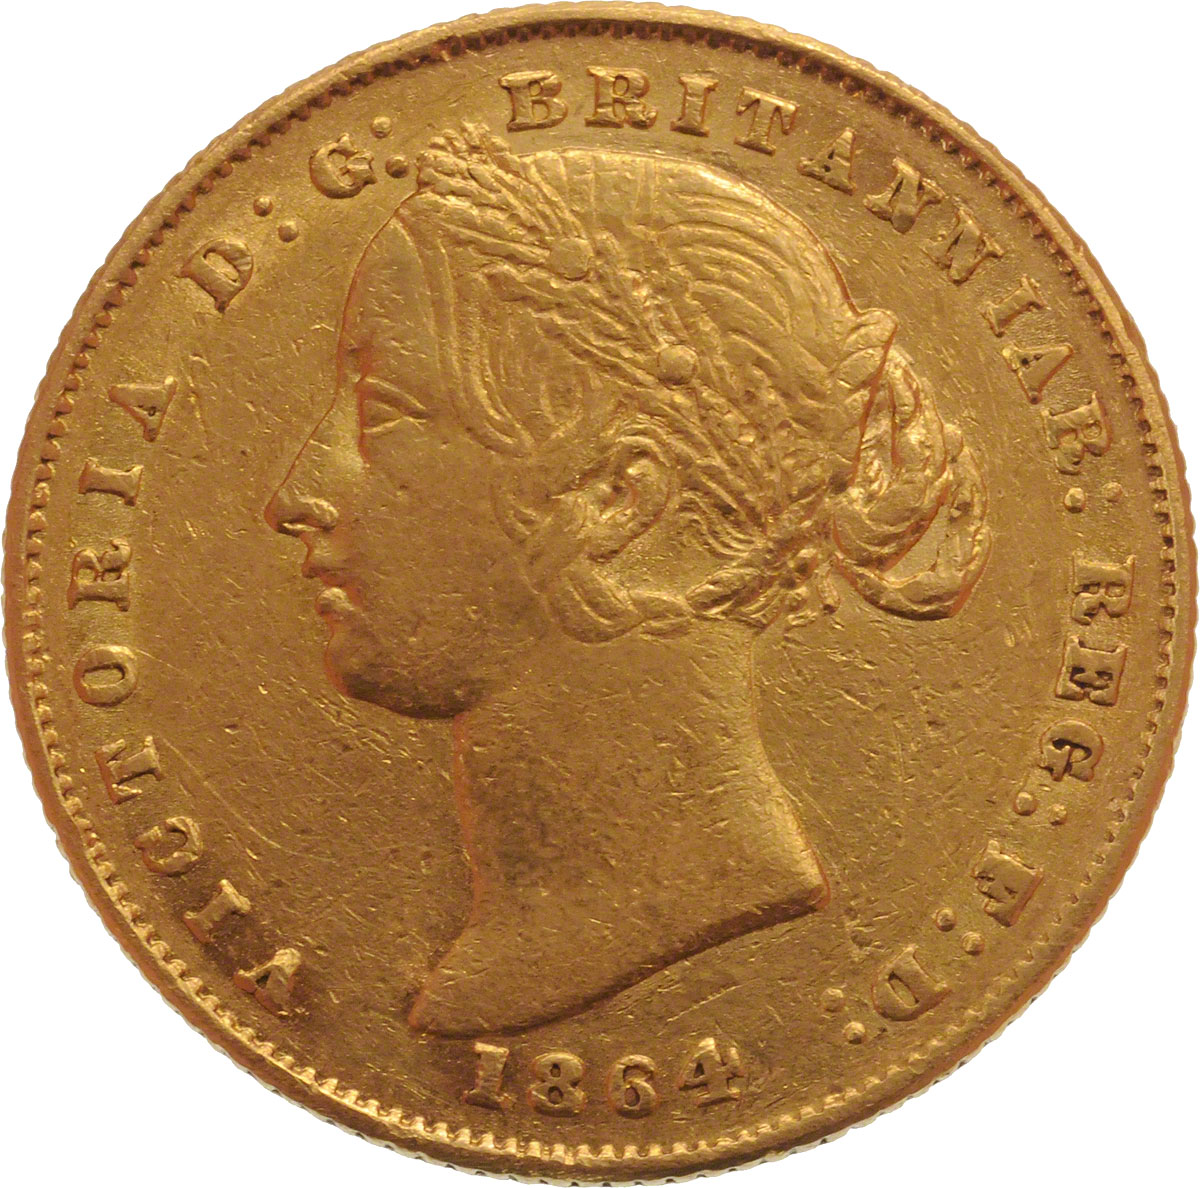 1864 Βικτώρια (Νομισματοκοπείο Σίδνεϊ)